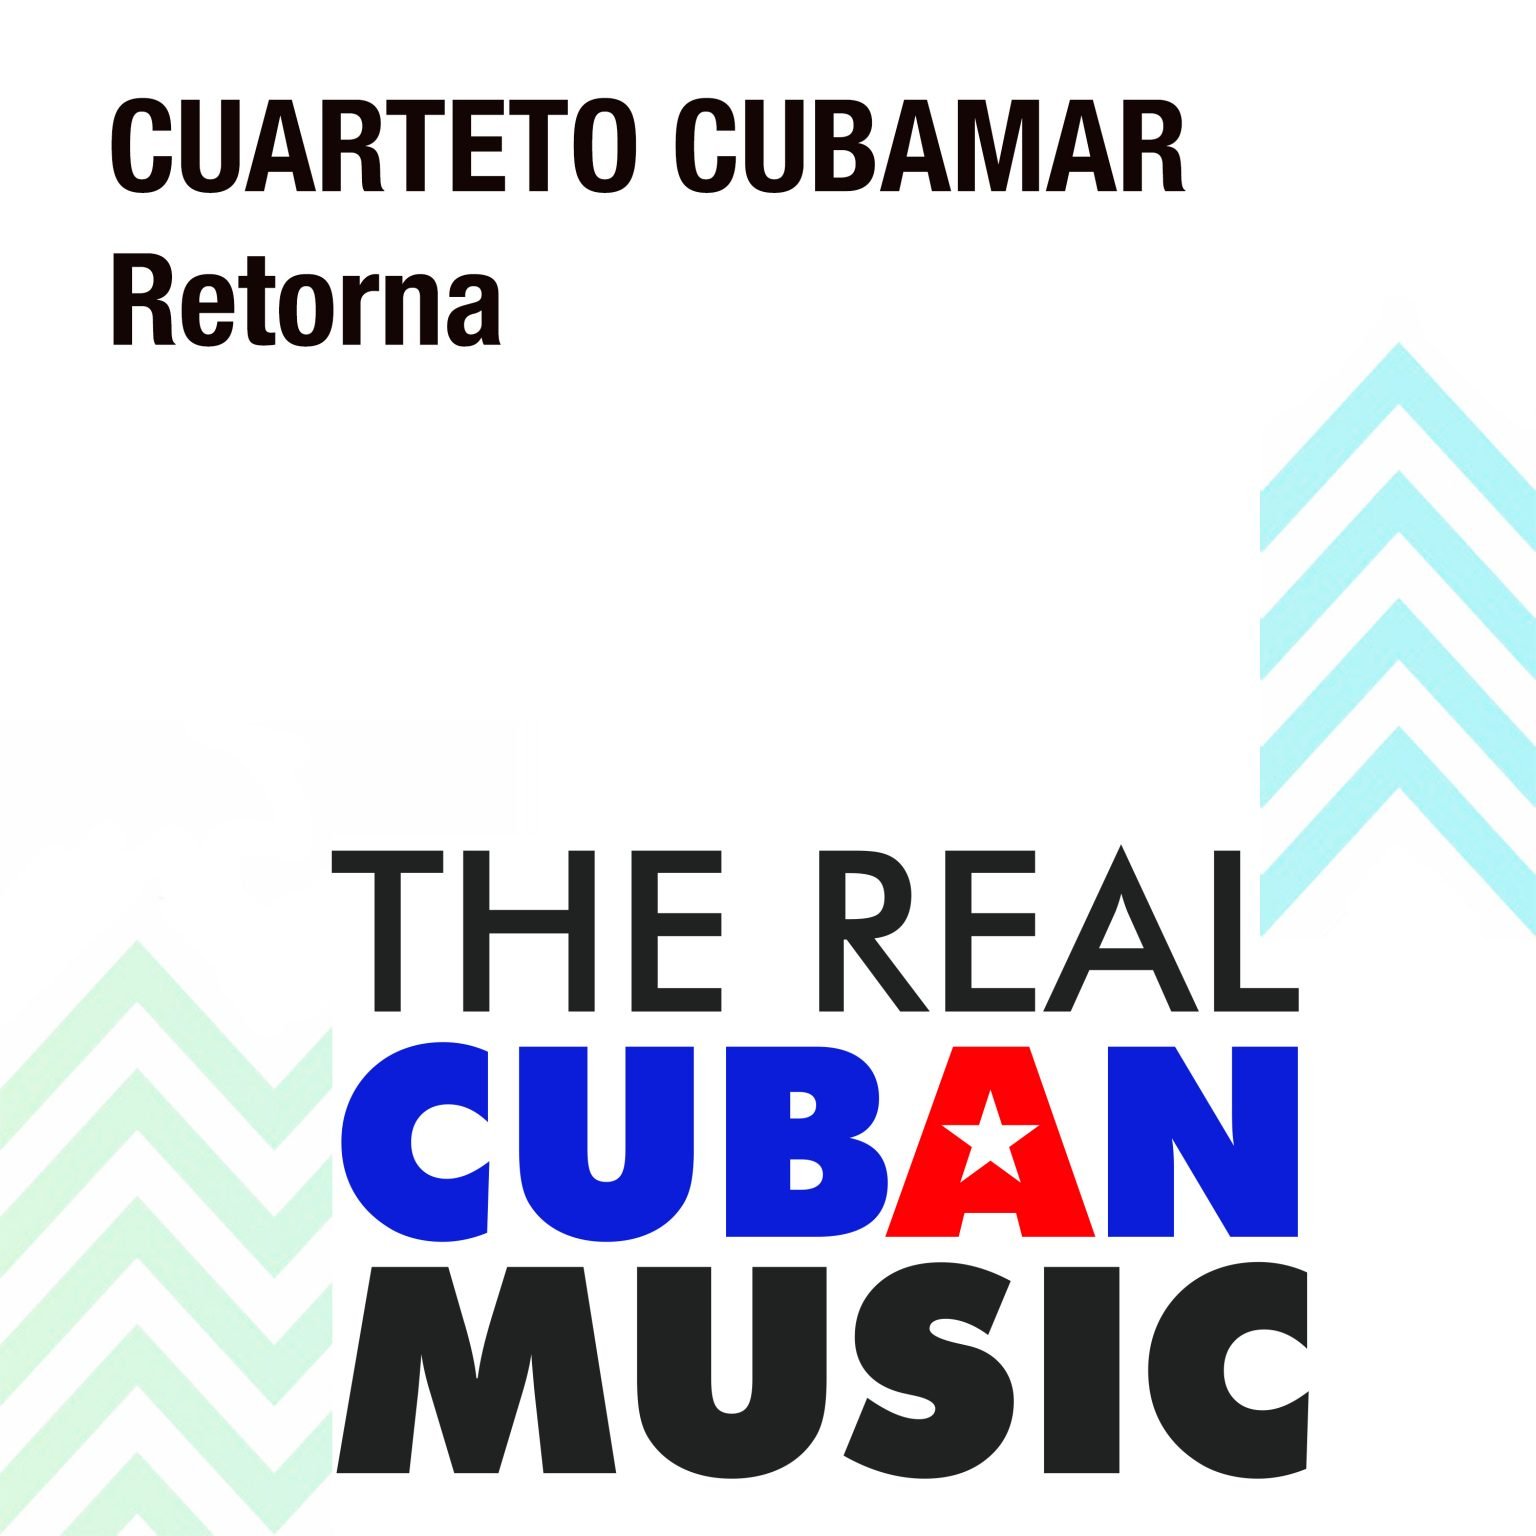 CDM-143_CuartetoCubamar_Retorna